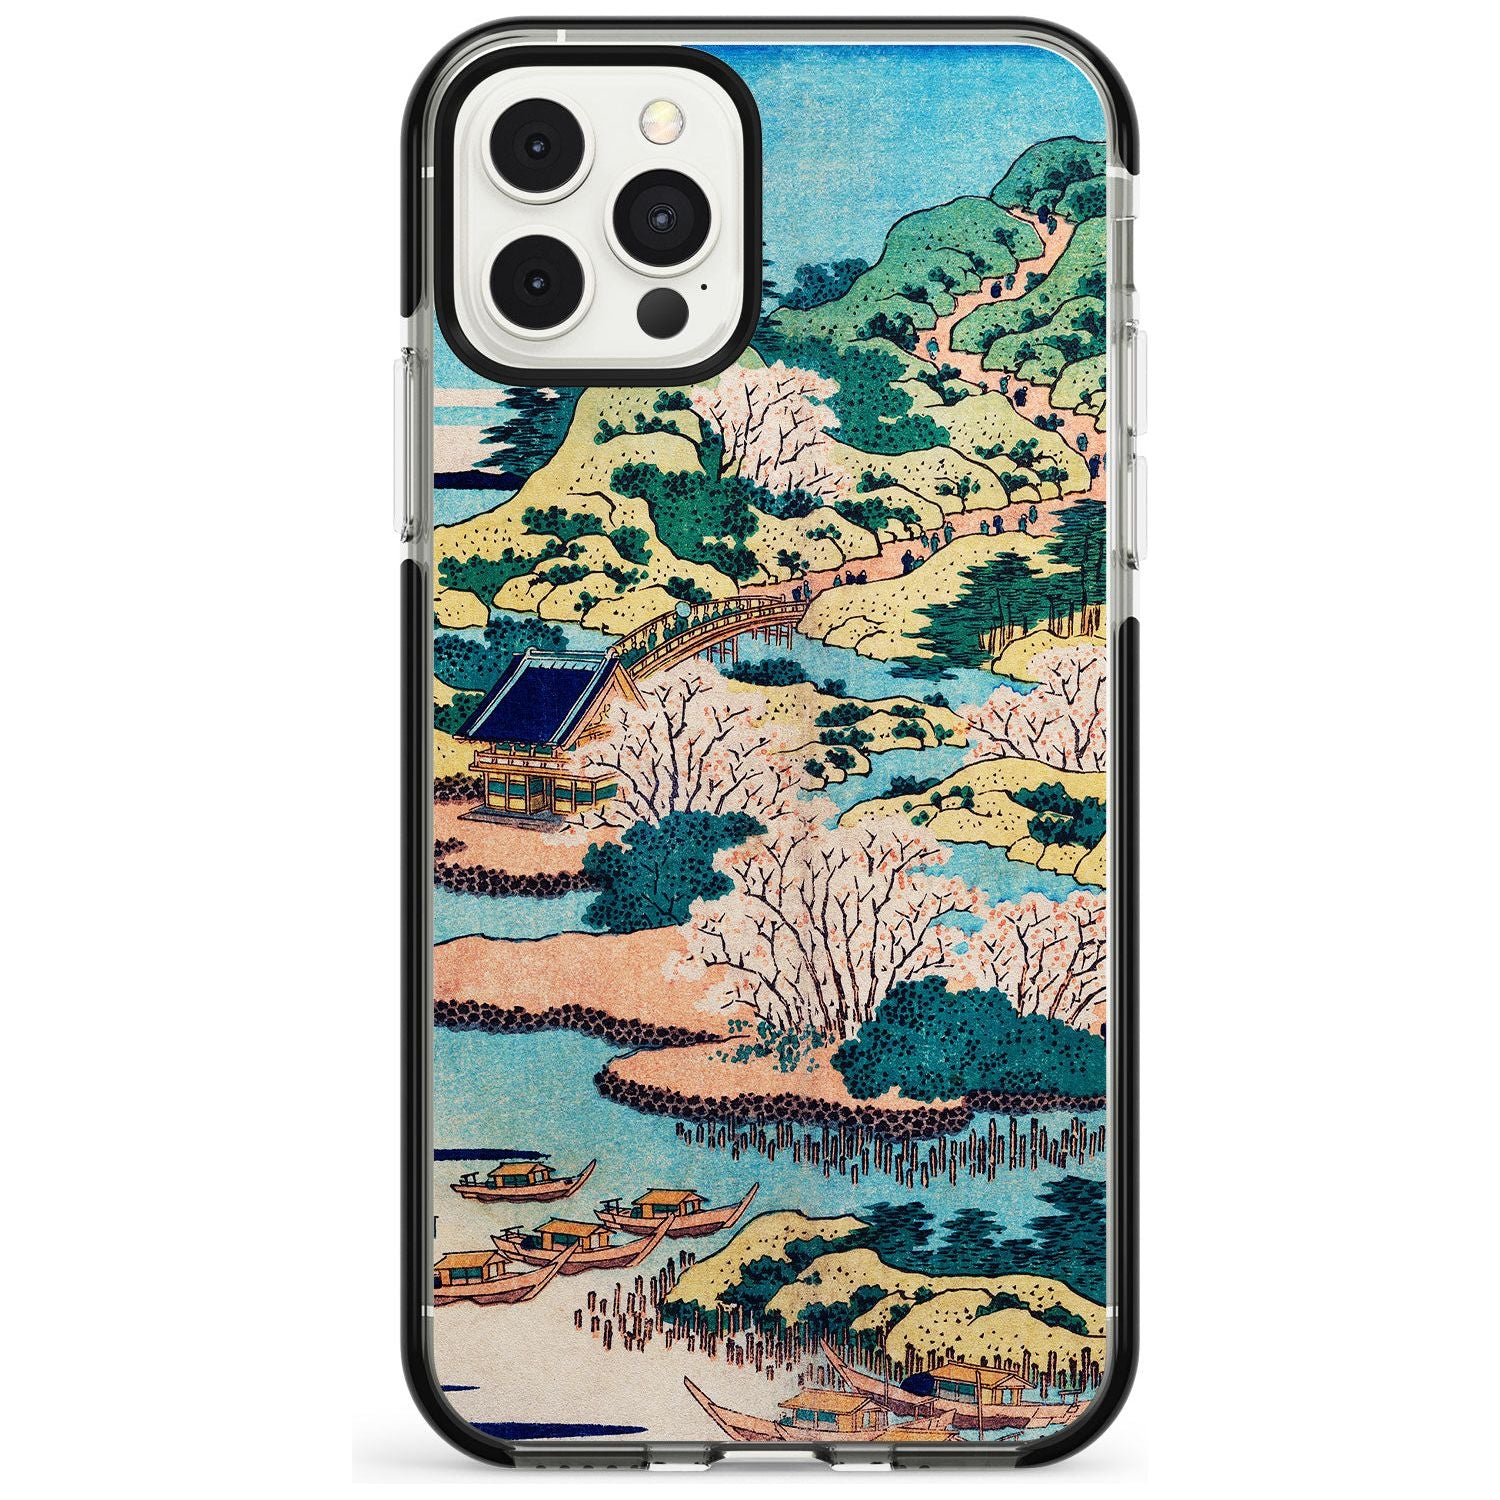 Coastal Community by Katsushika Hokusai  Pink Fade Impact Phone Case for iPhone 11